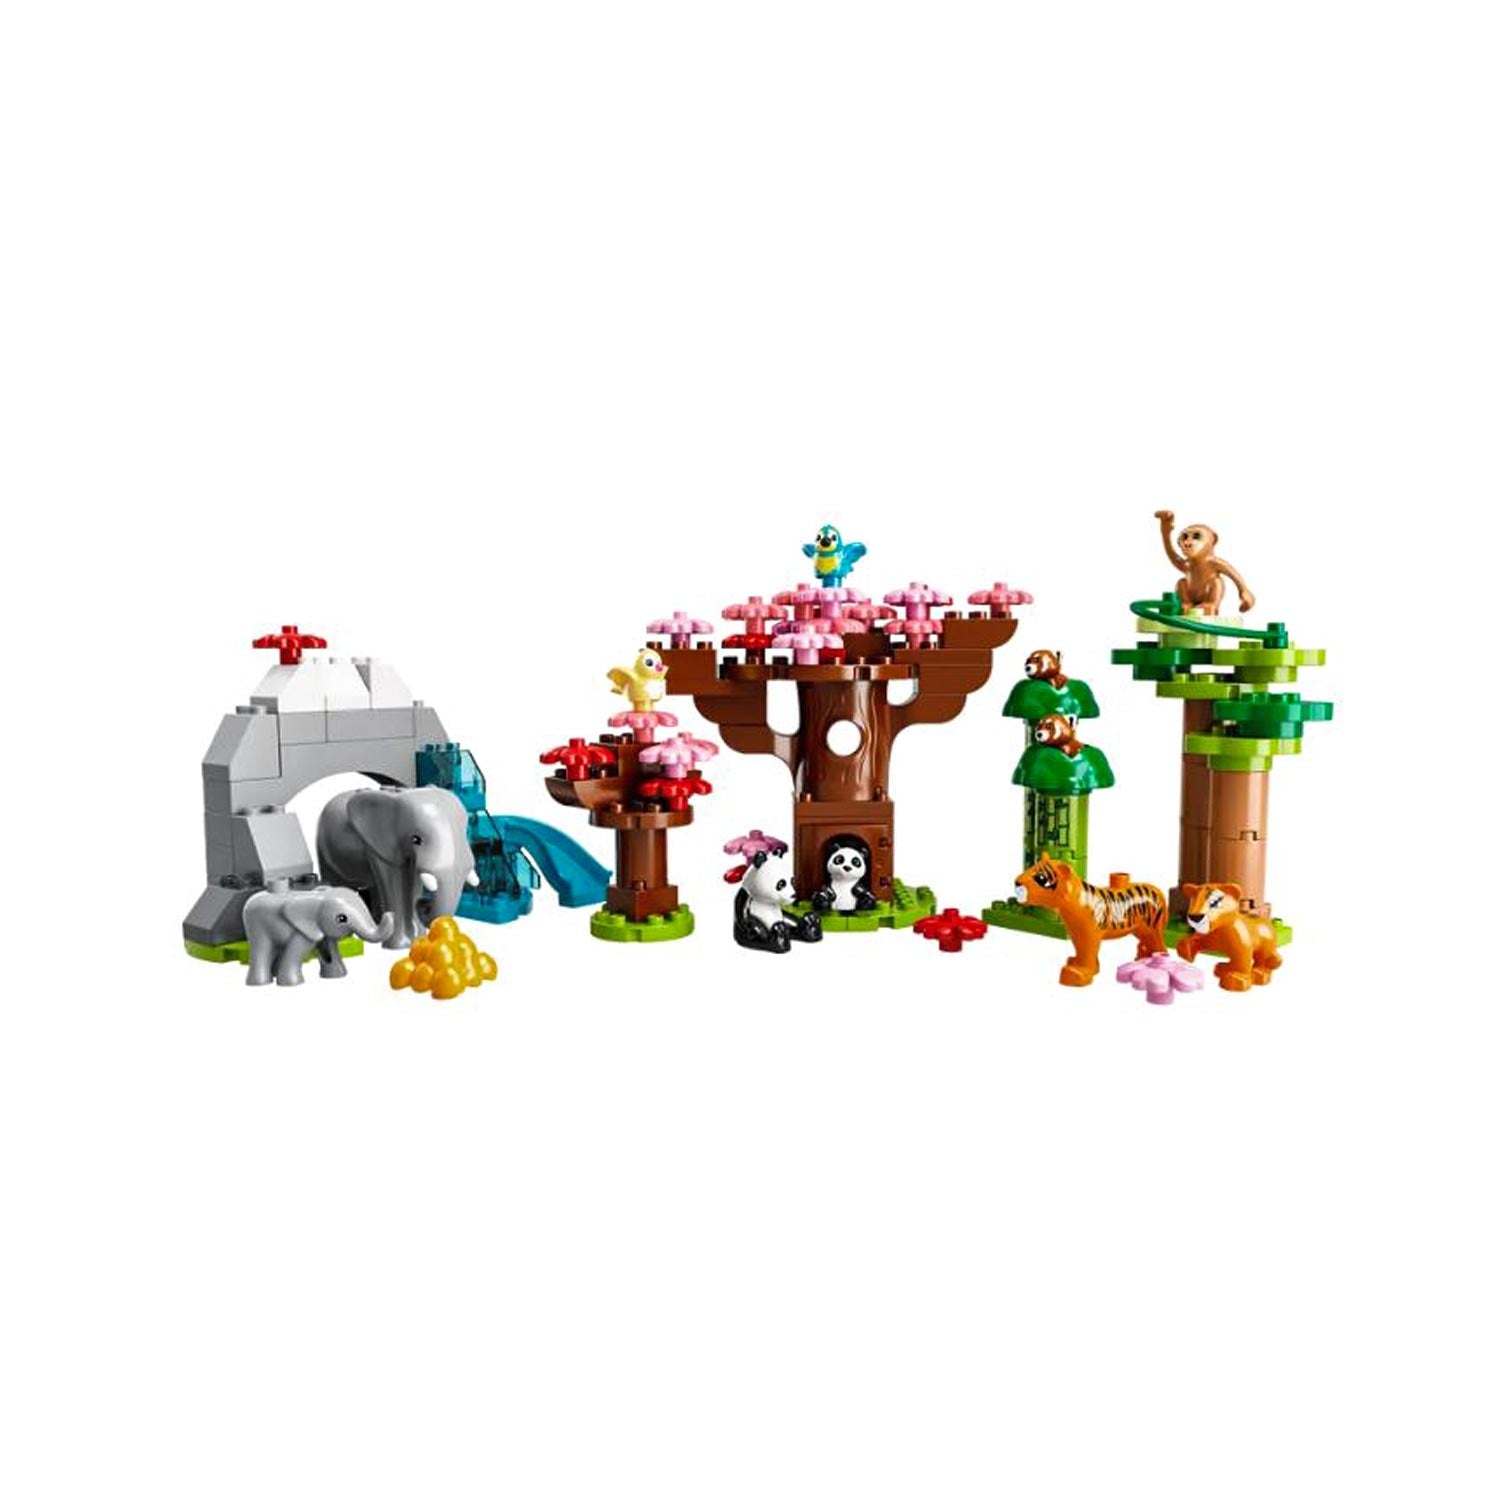 LEGO DUPLO Wild Animals of Asia set